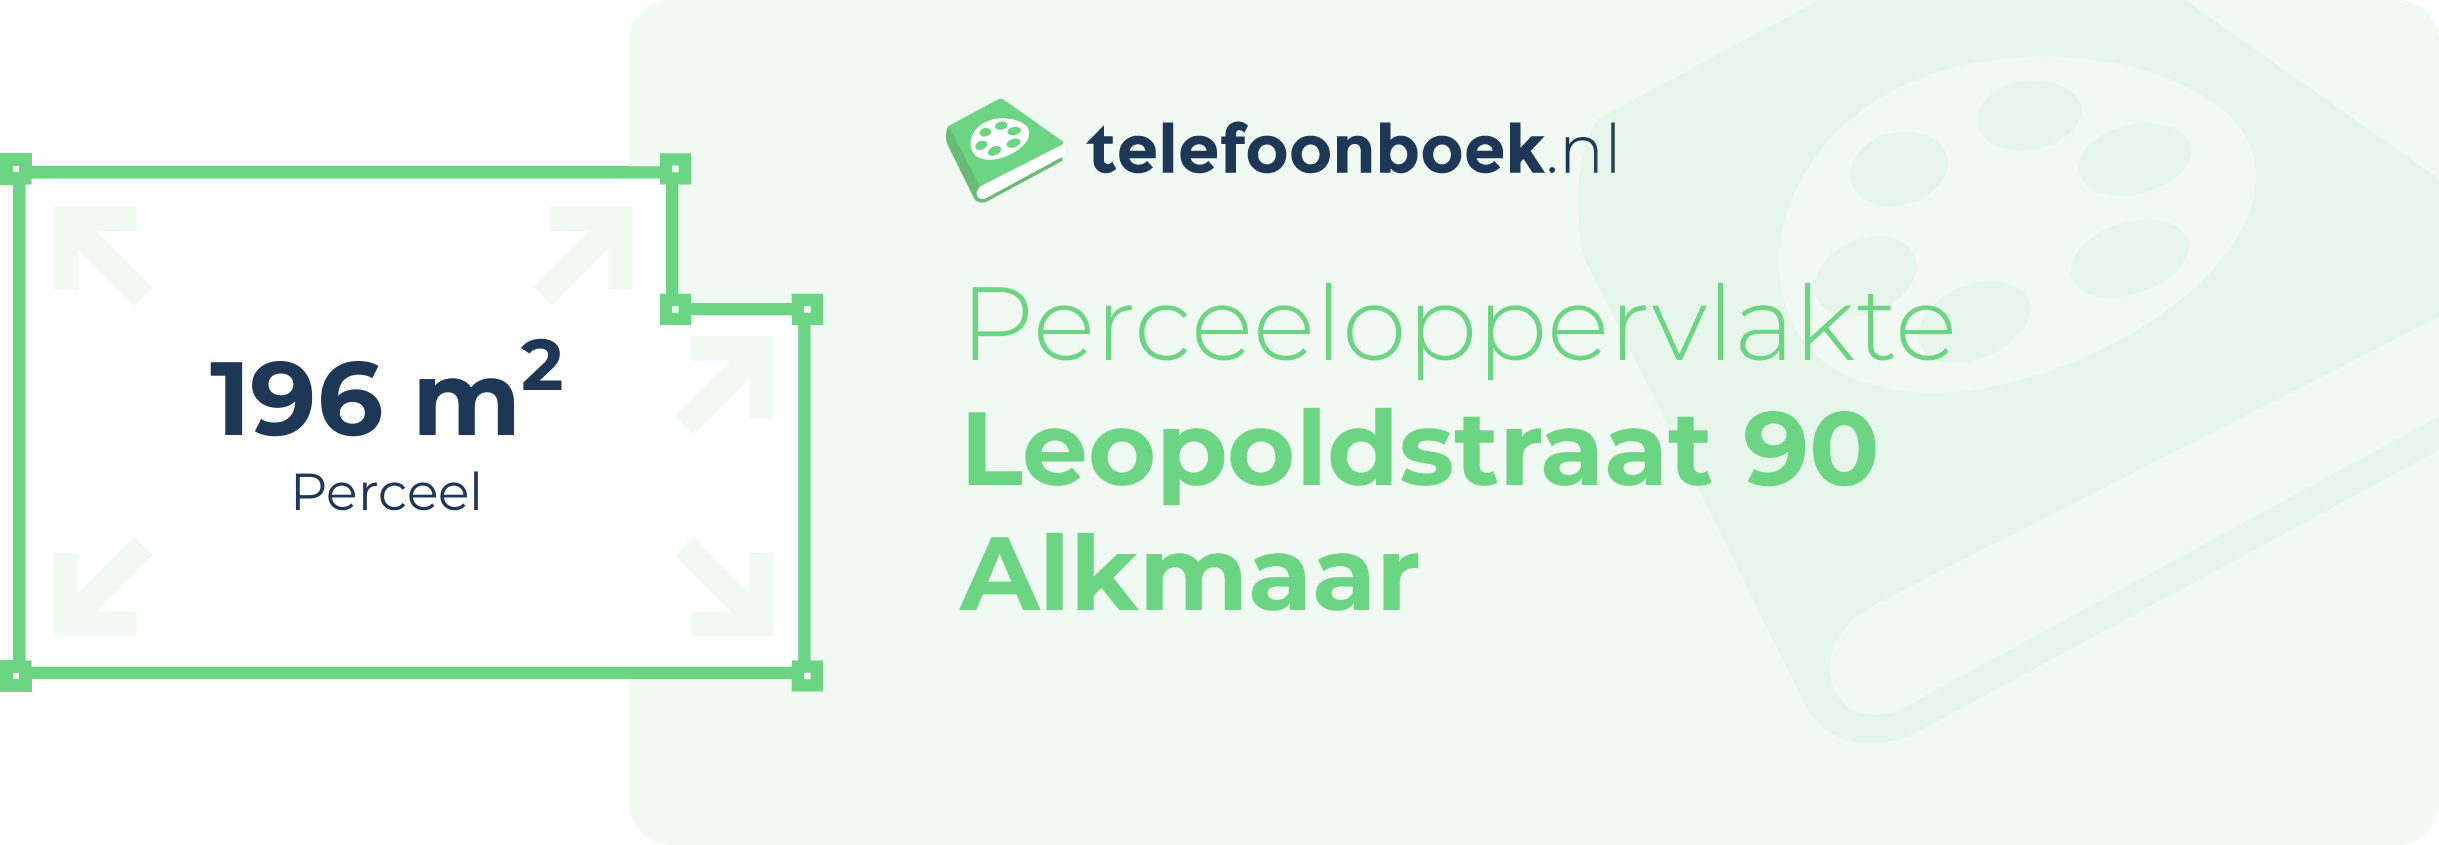 Perceeloppervlakte Leopoldstraat 90 Alkmaar